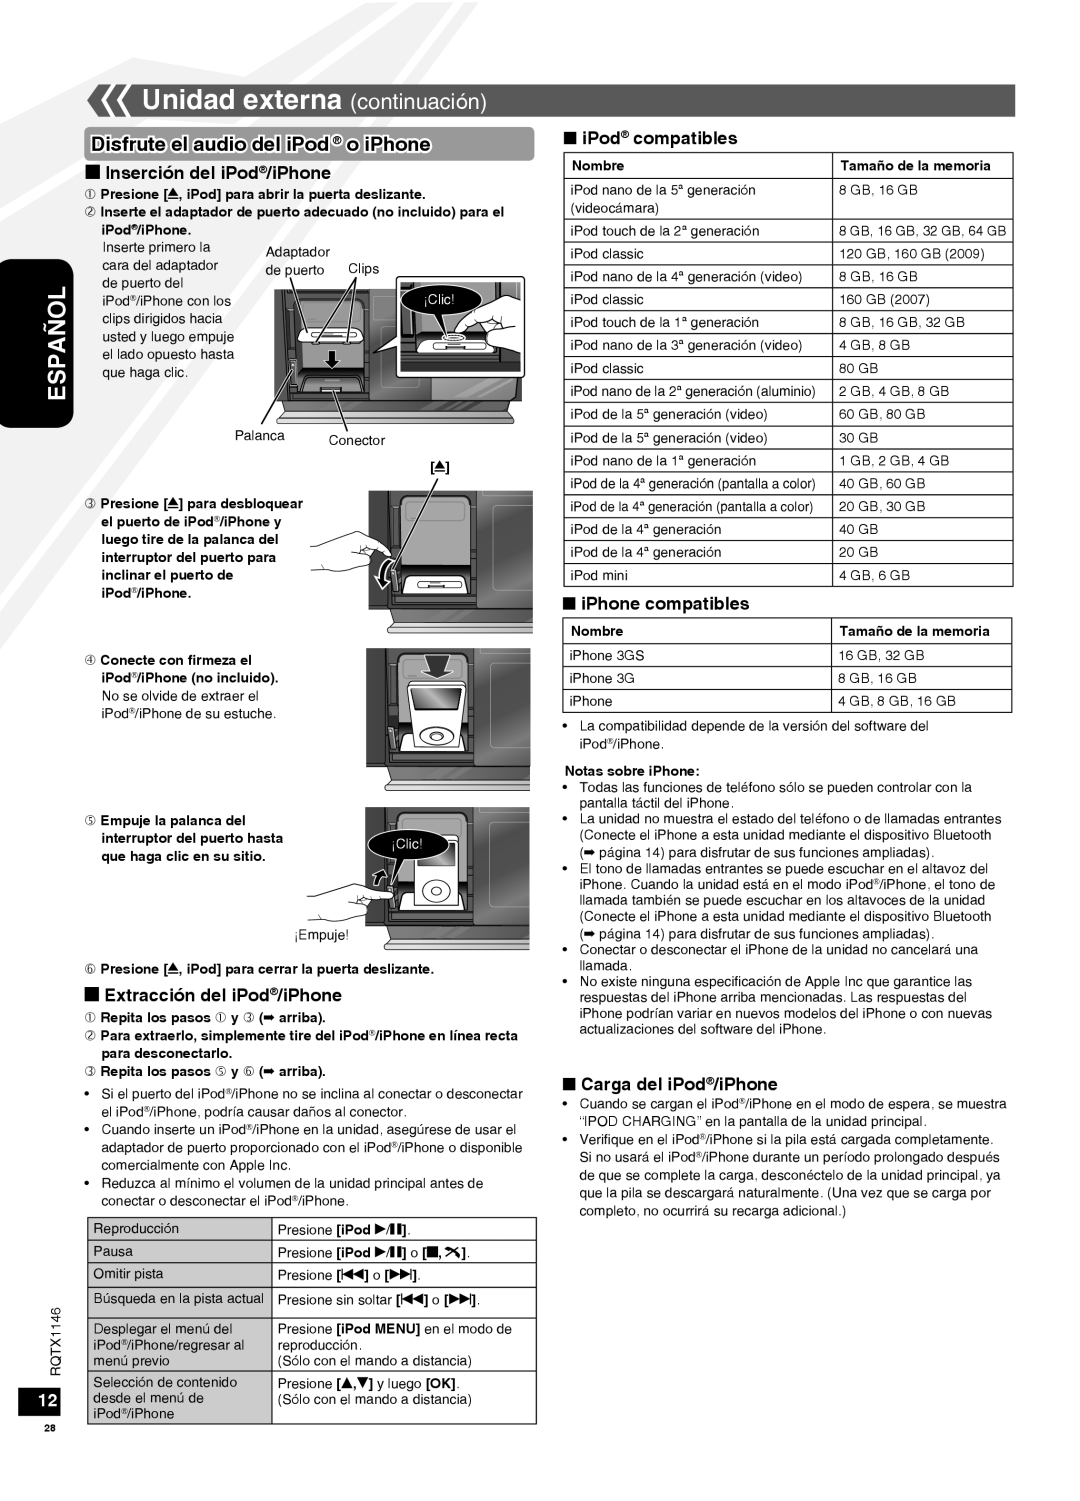 Panasonic SC-HC40 Unidad externa continuación, Disfrute el audio deliPod o iPhone, g Inserción del iPod/iPhone, Español 